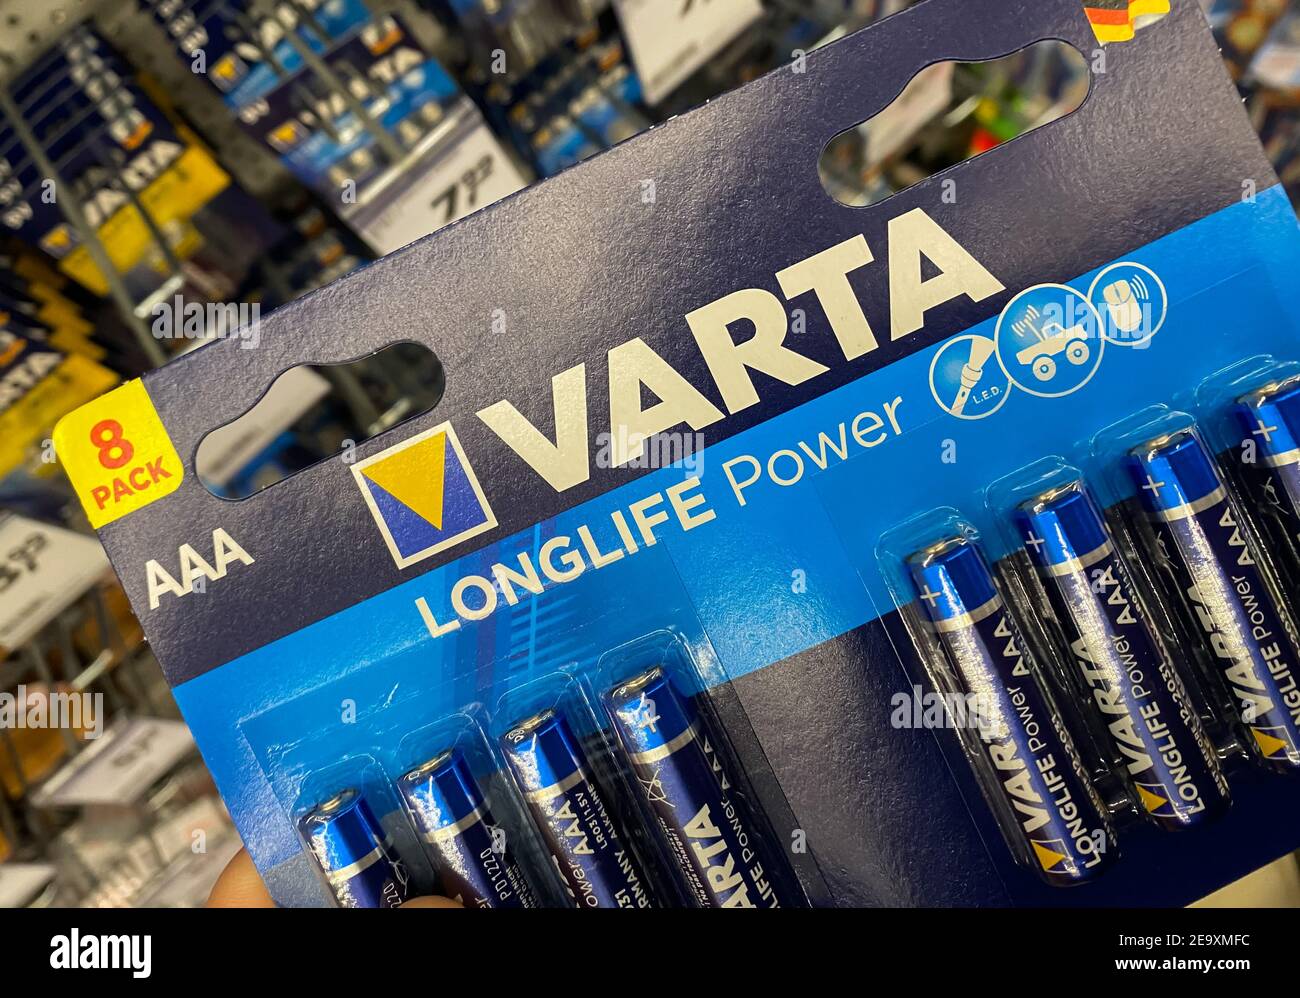 8 AAA Varta Longlife Power - 1.5V - AAA - Alkaline - Disposable